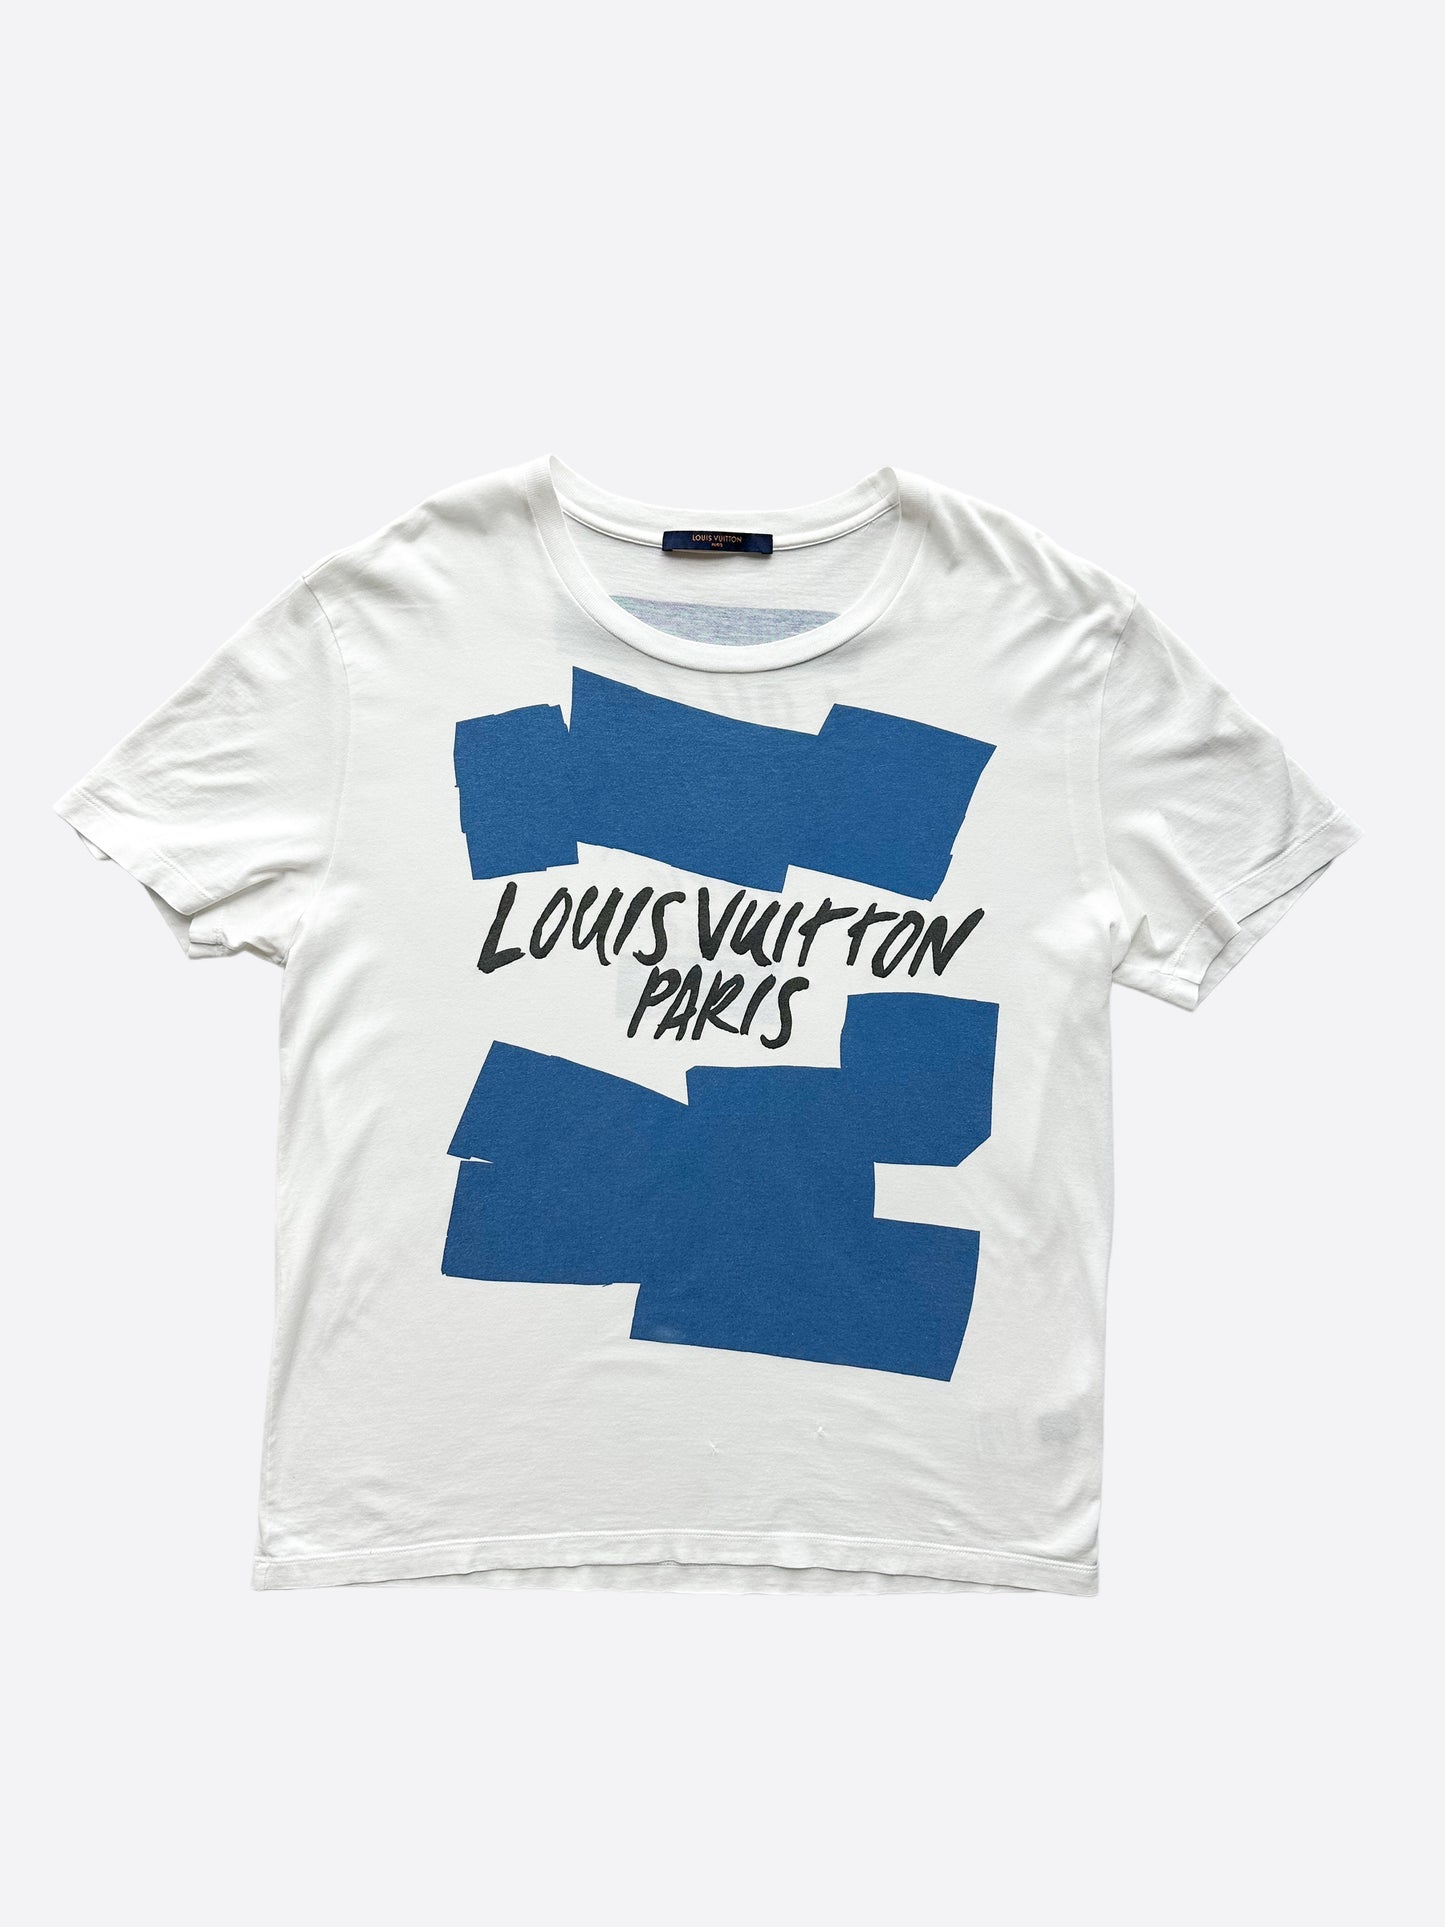 Louis Vuitton Paris Statement, Canvas – Le'Blanc Home Boutique